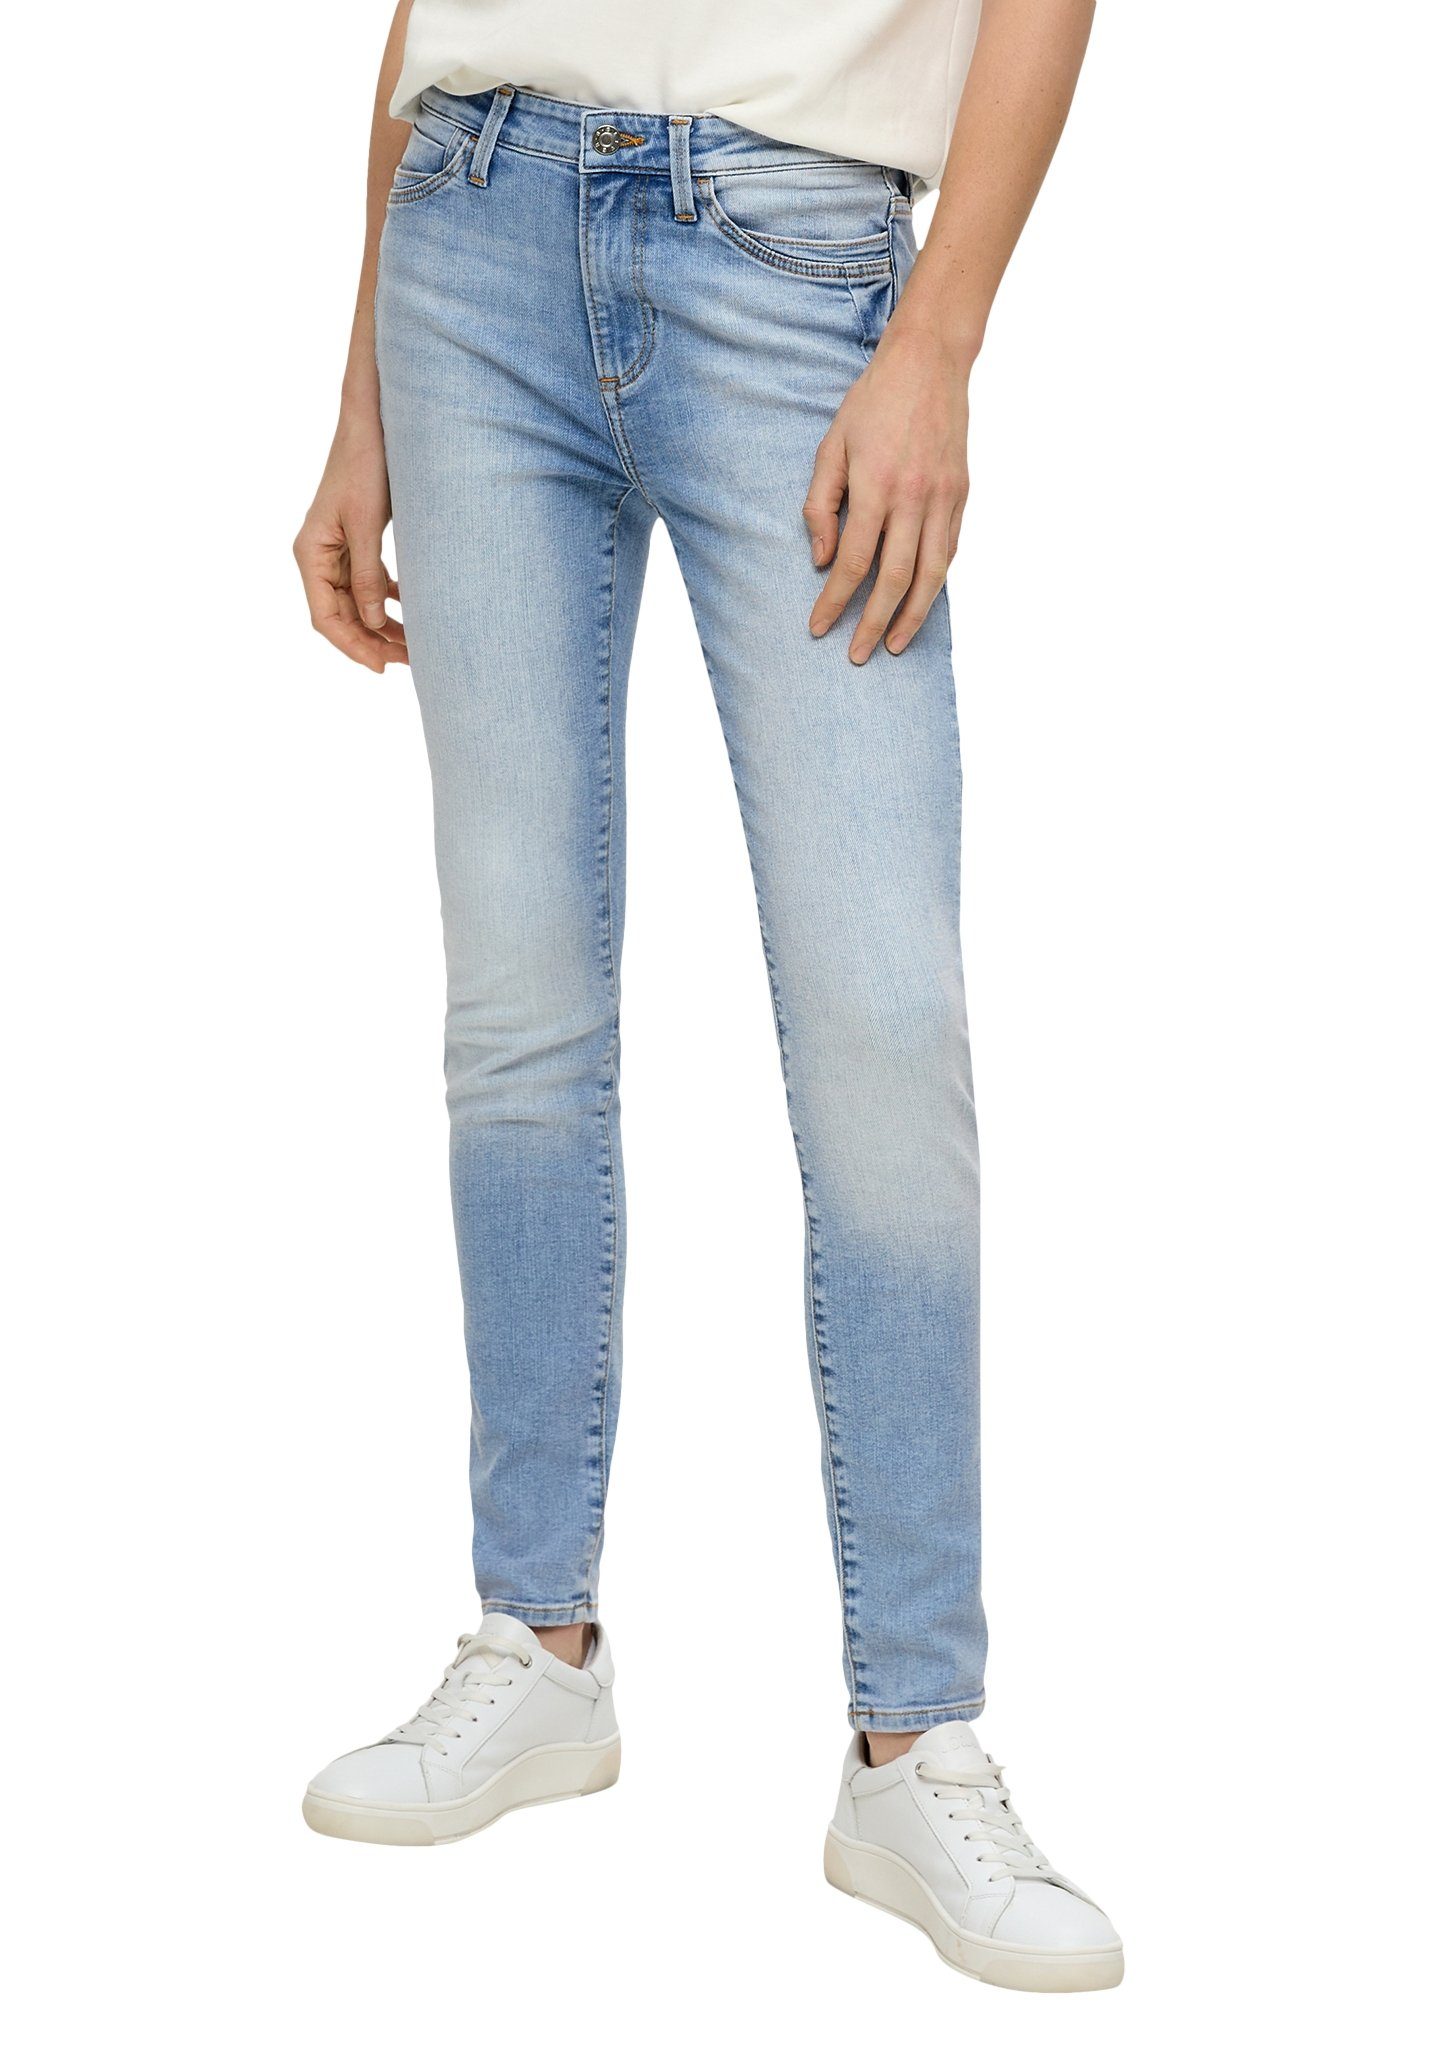 s.Oliver 5-pocket jeans Izabell